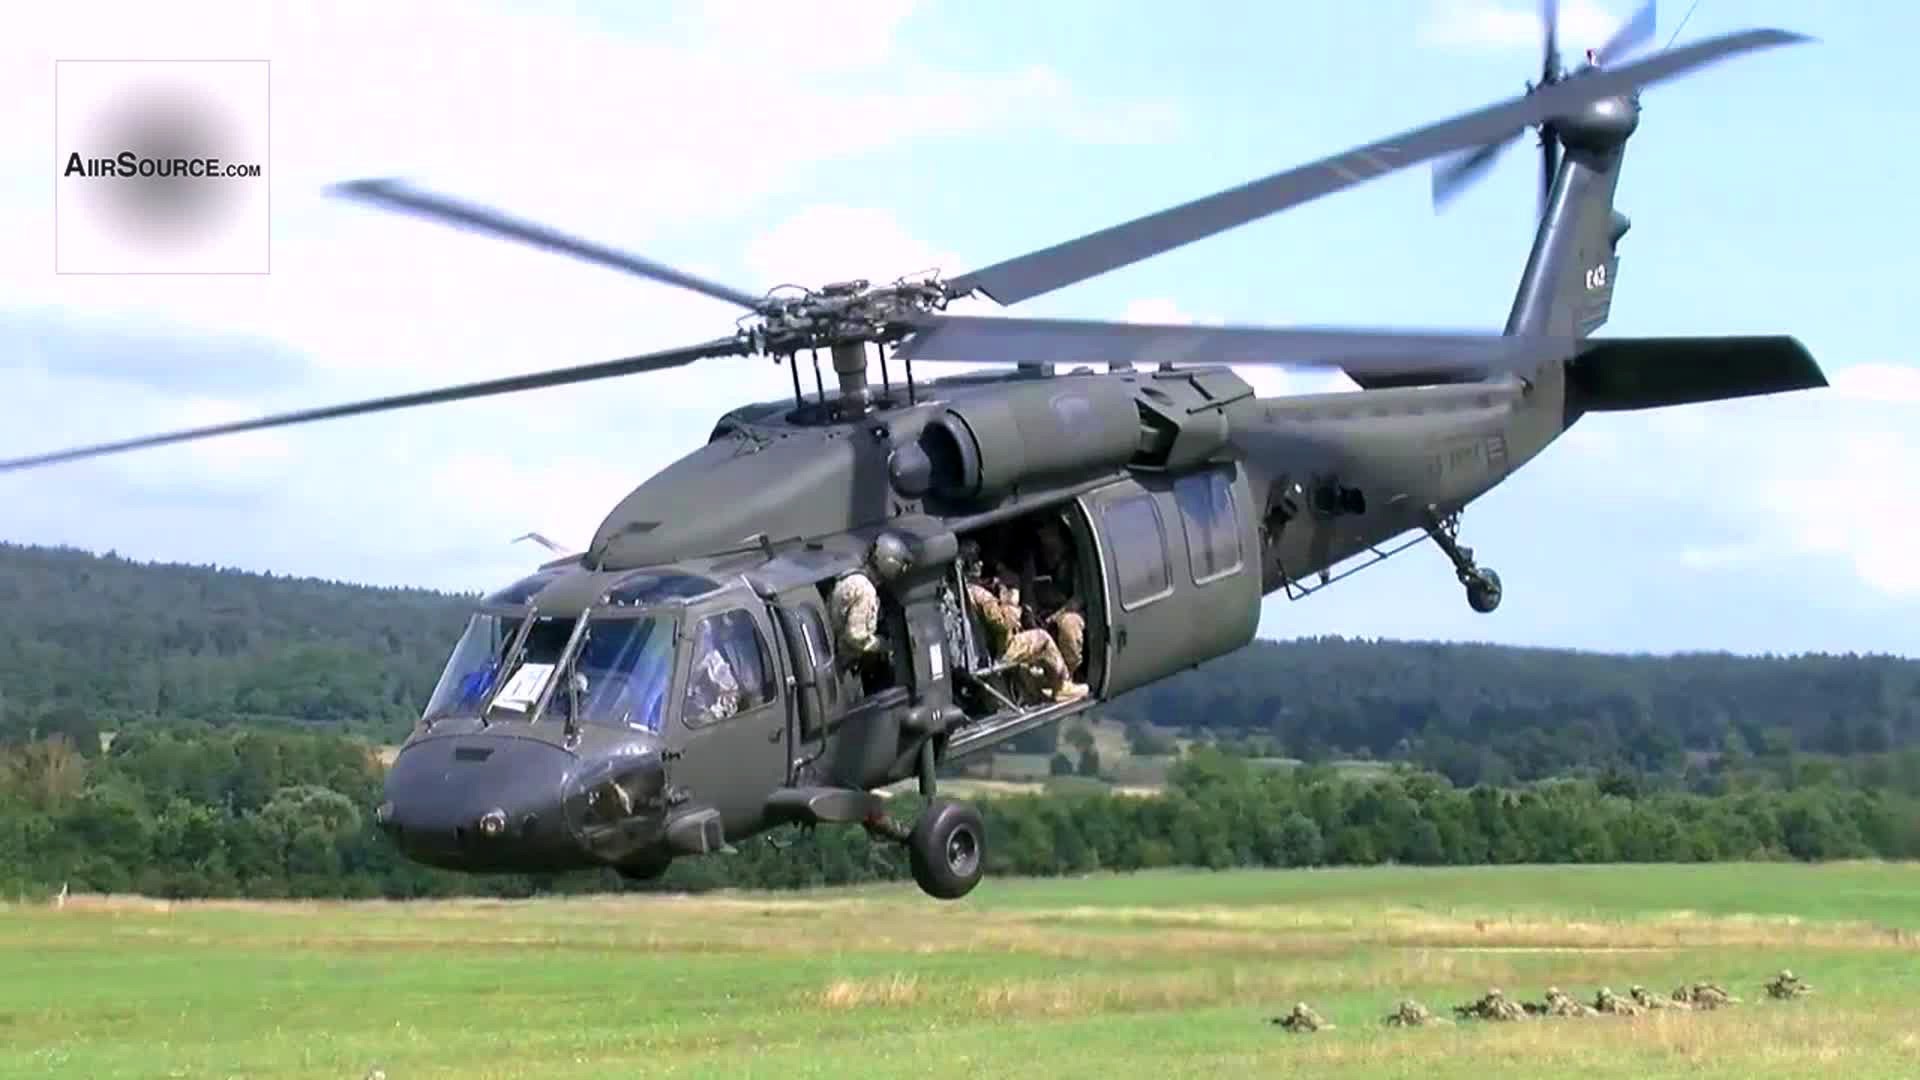 Військовий вертоліт армії США впав у Тихий океан. 5 членів екіпажу зникли безвісти